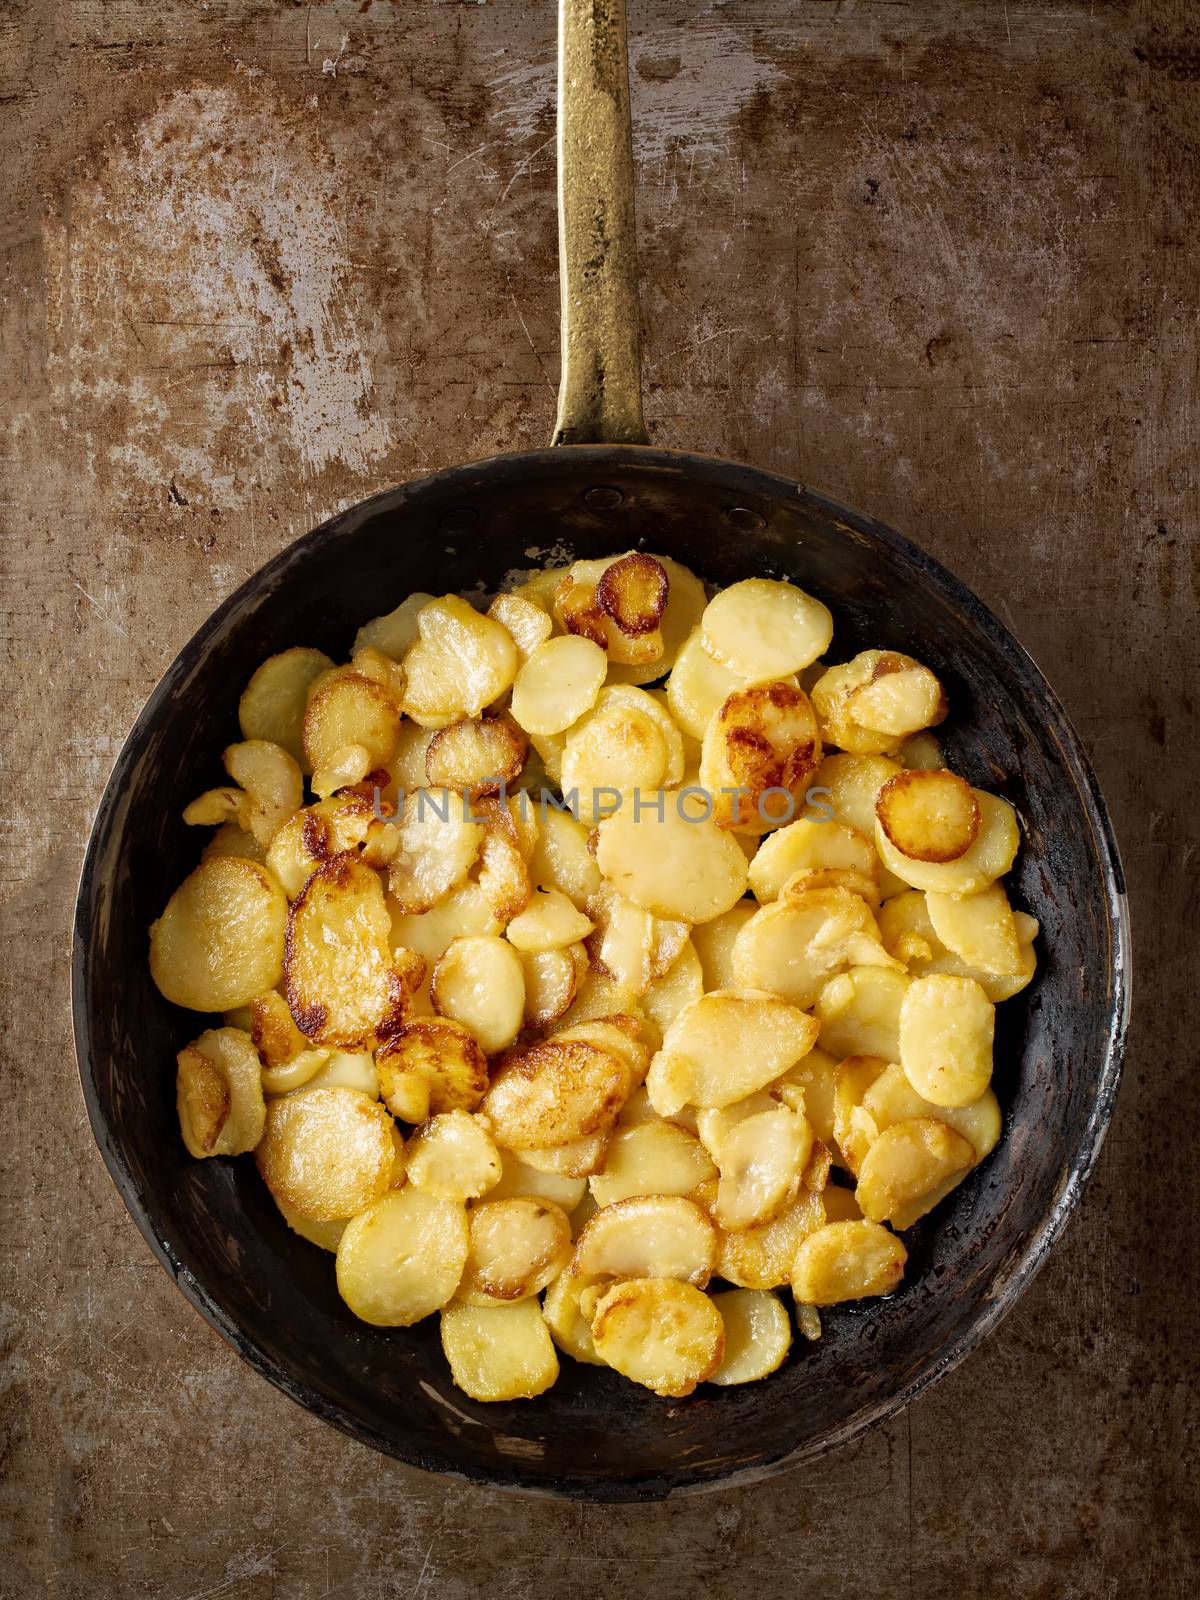 rustic golden german pan fried potato bratkartofflen by zkruger